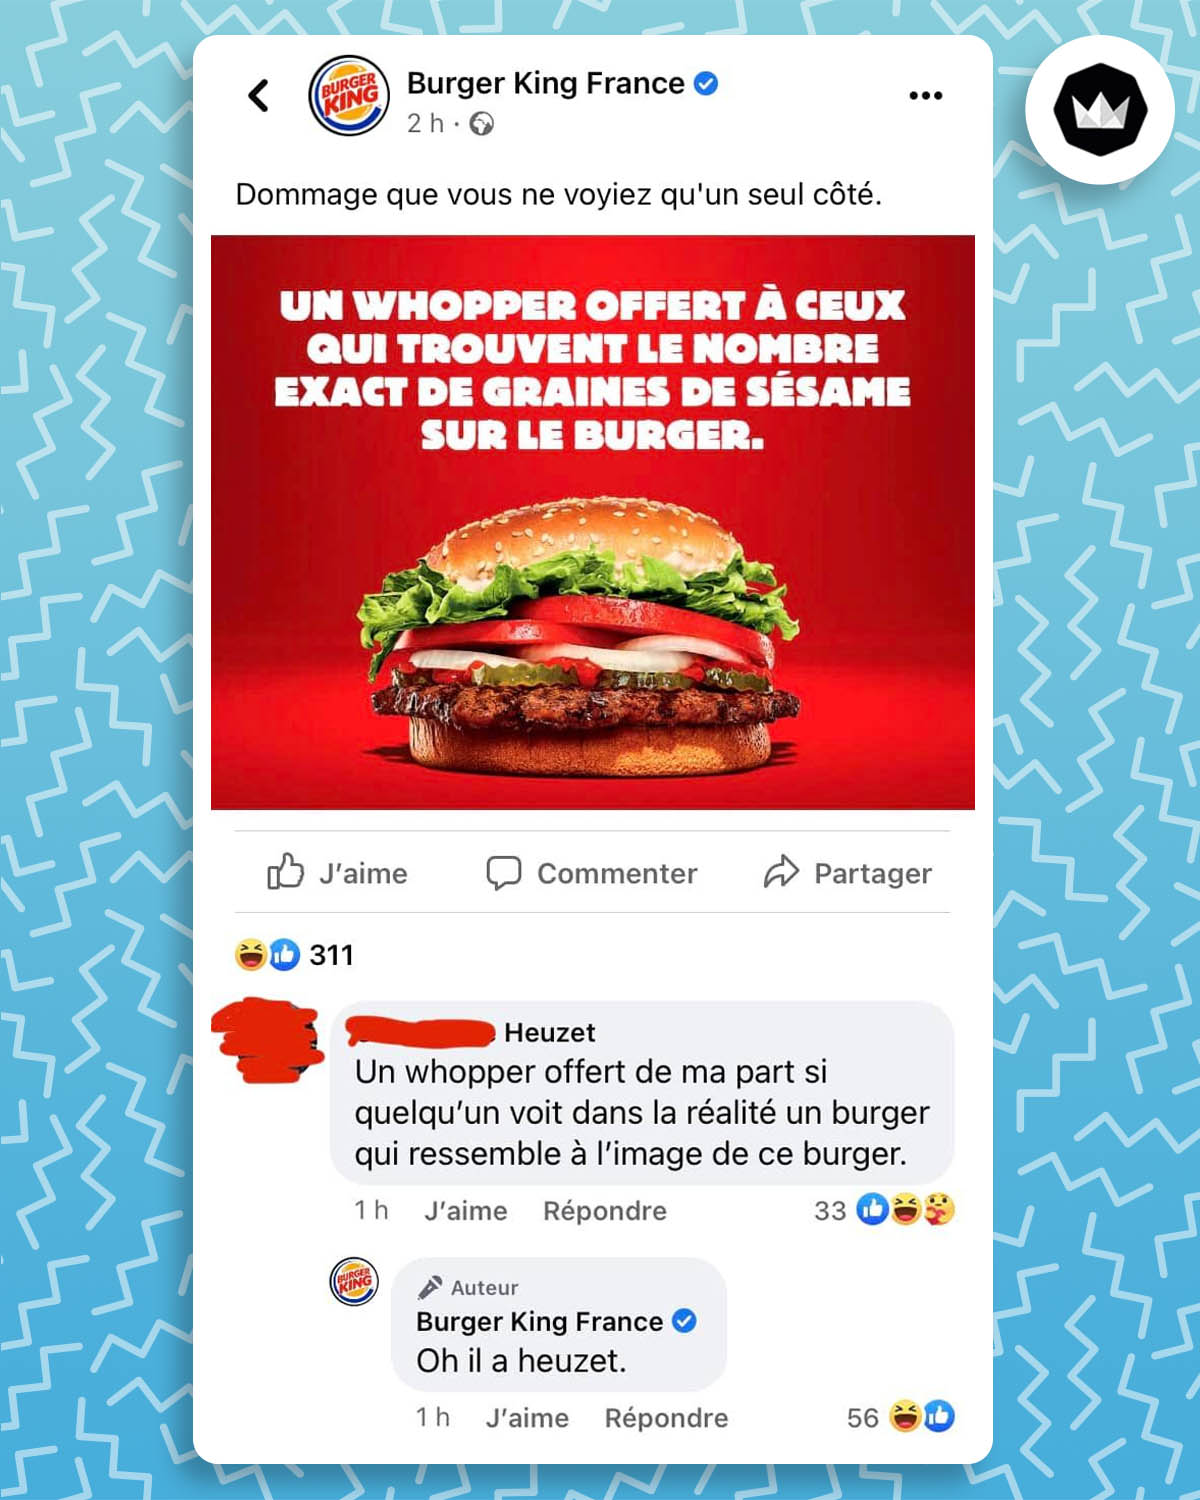 Échange entre Burger King et un internaute : 

Burger King : Un Whopper offert à ceux qui trouvent le nombre exact de graines de sésame sur le burger. 

Internaute dont le nom de famille est Heuzet : Un Whopper offert de ma part si quelqu’un voit dans la réalité un burger qui ressemble à l’image de ce burger.

Burger King : Oh, il a heuzet.